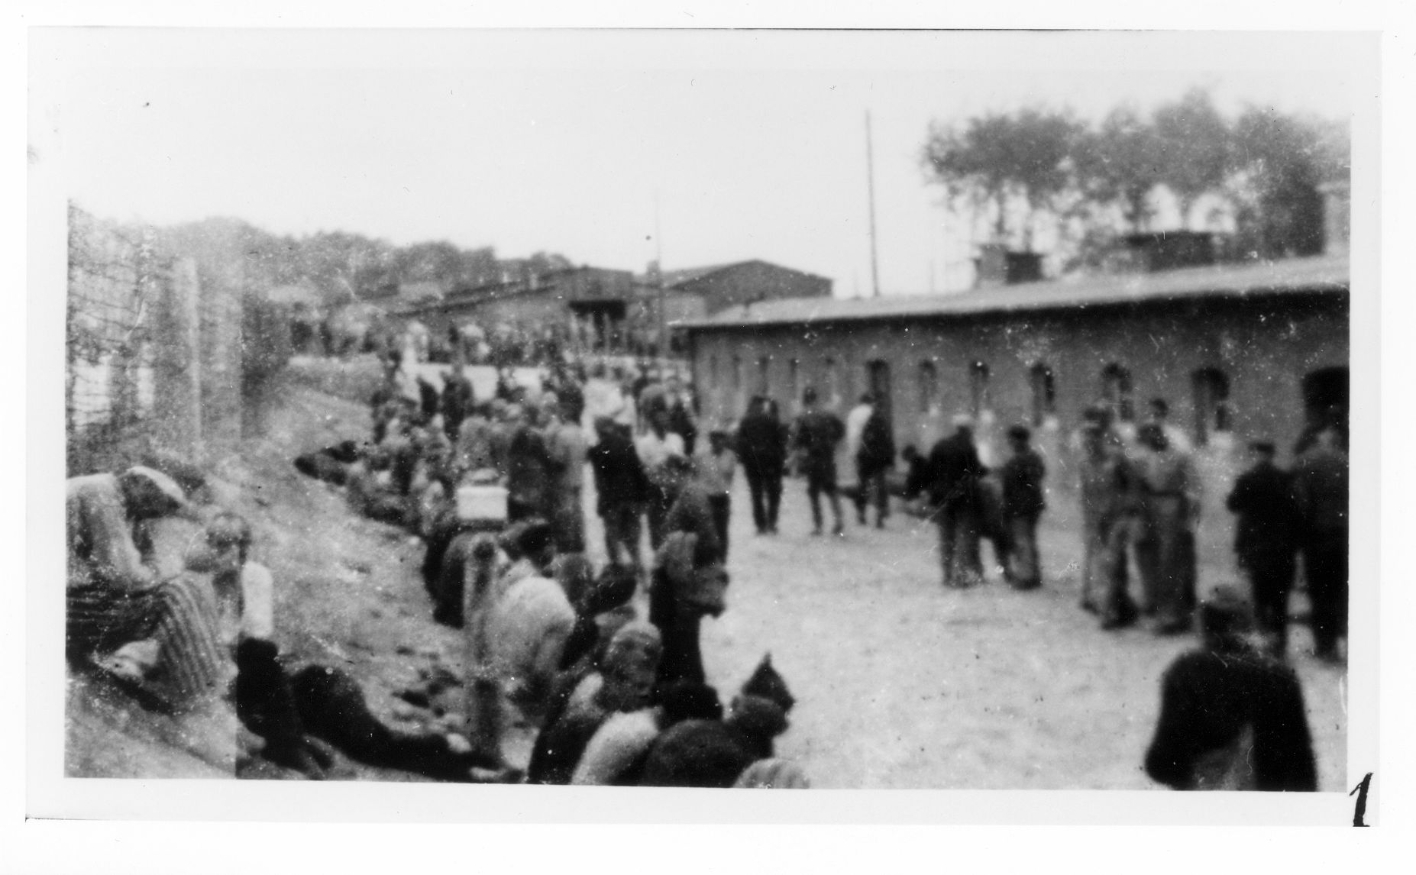 Häftlinge auf der Lagerstraße vor dem Latrinen- und Waschraumgebäude im Kleinen Lager. Im Hintergrund die Baracken 59 und 62. Viele Häftlinge sitzen am Wegesrand.